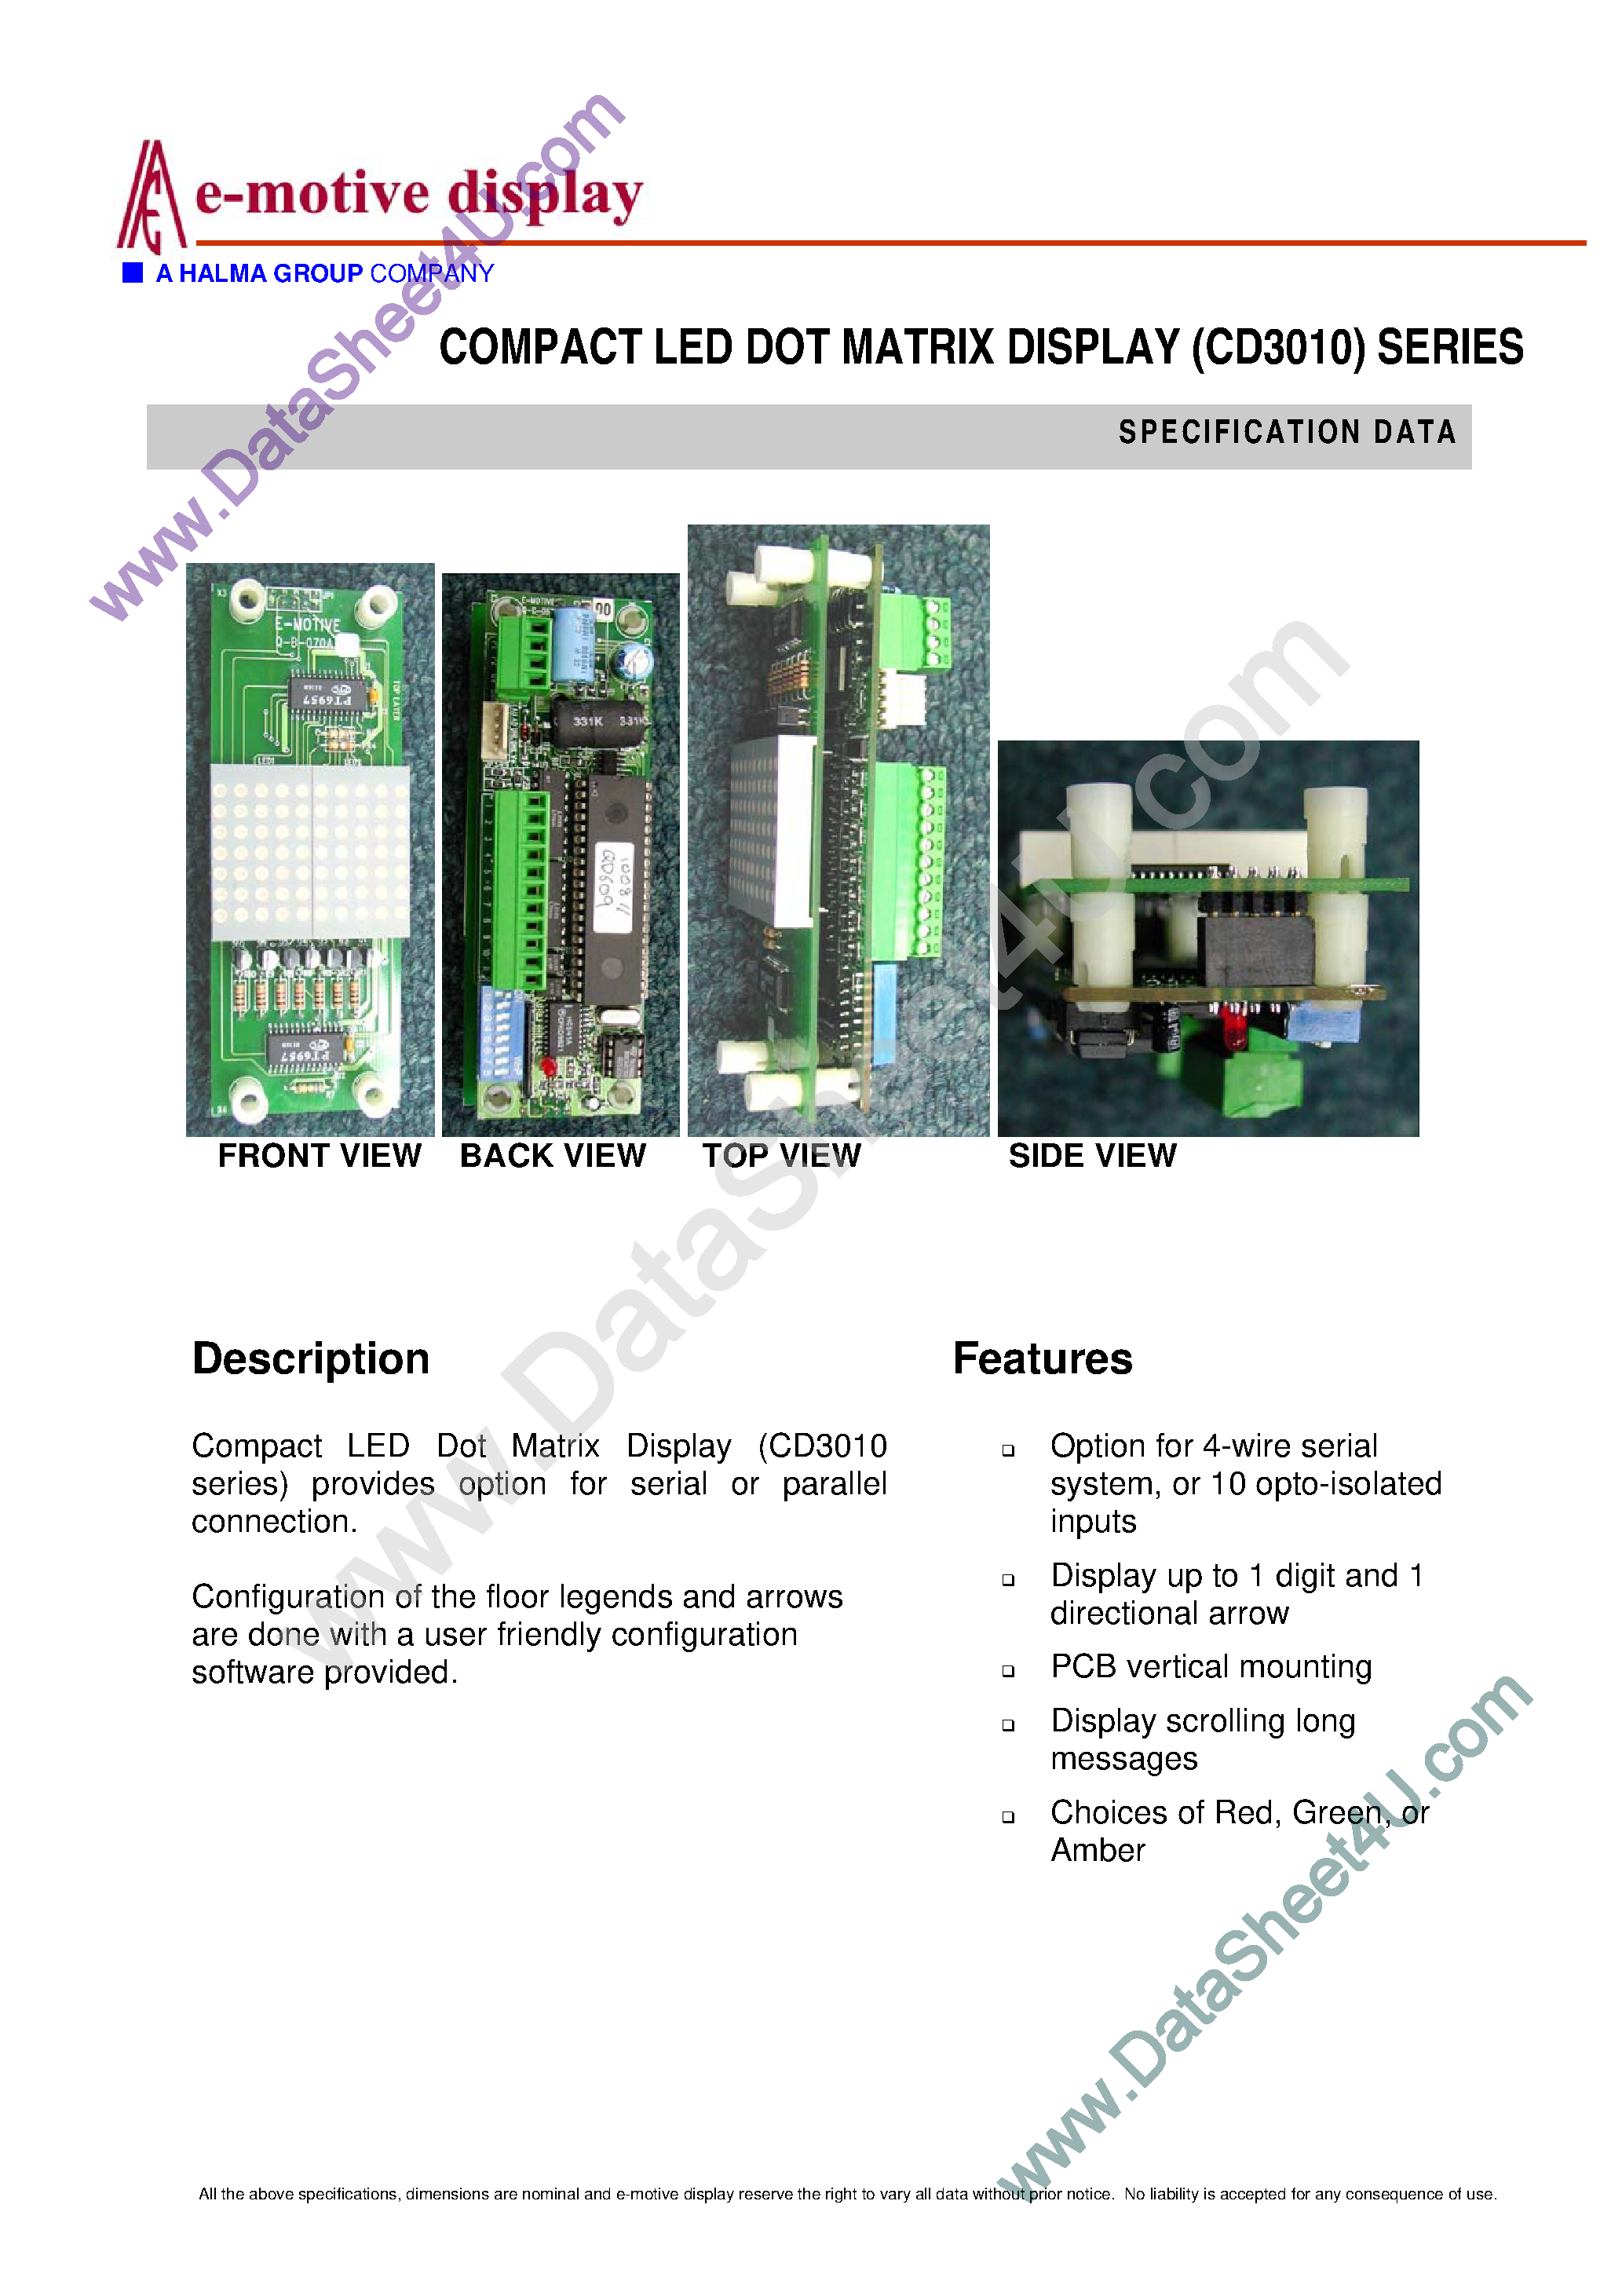 Даташит CD3010 - Compact LED Dot Matrix Display Series страница 1